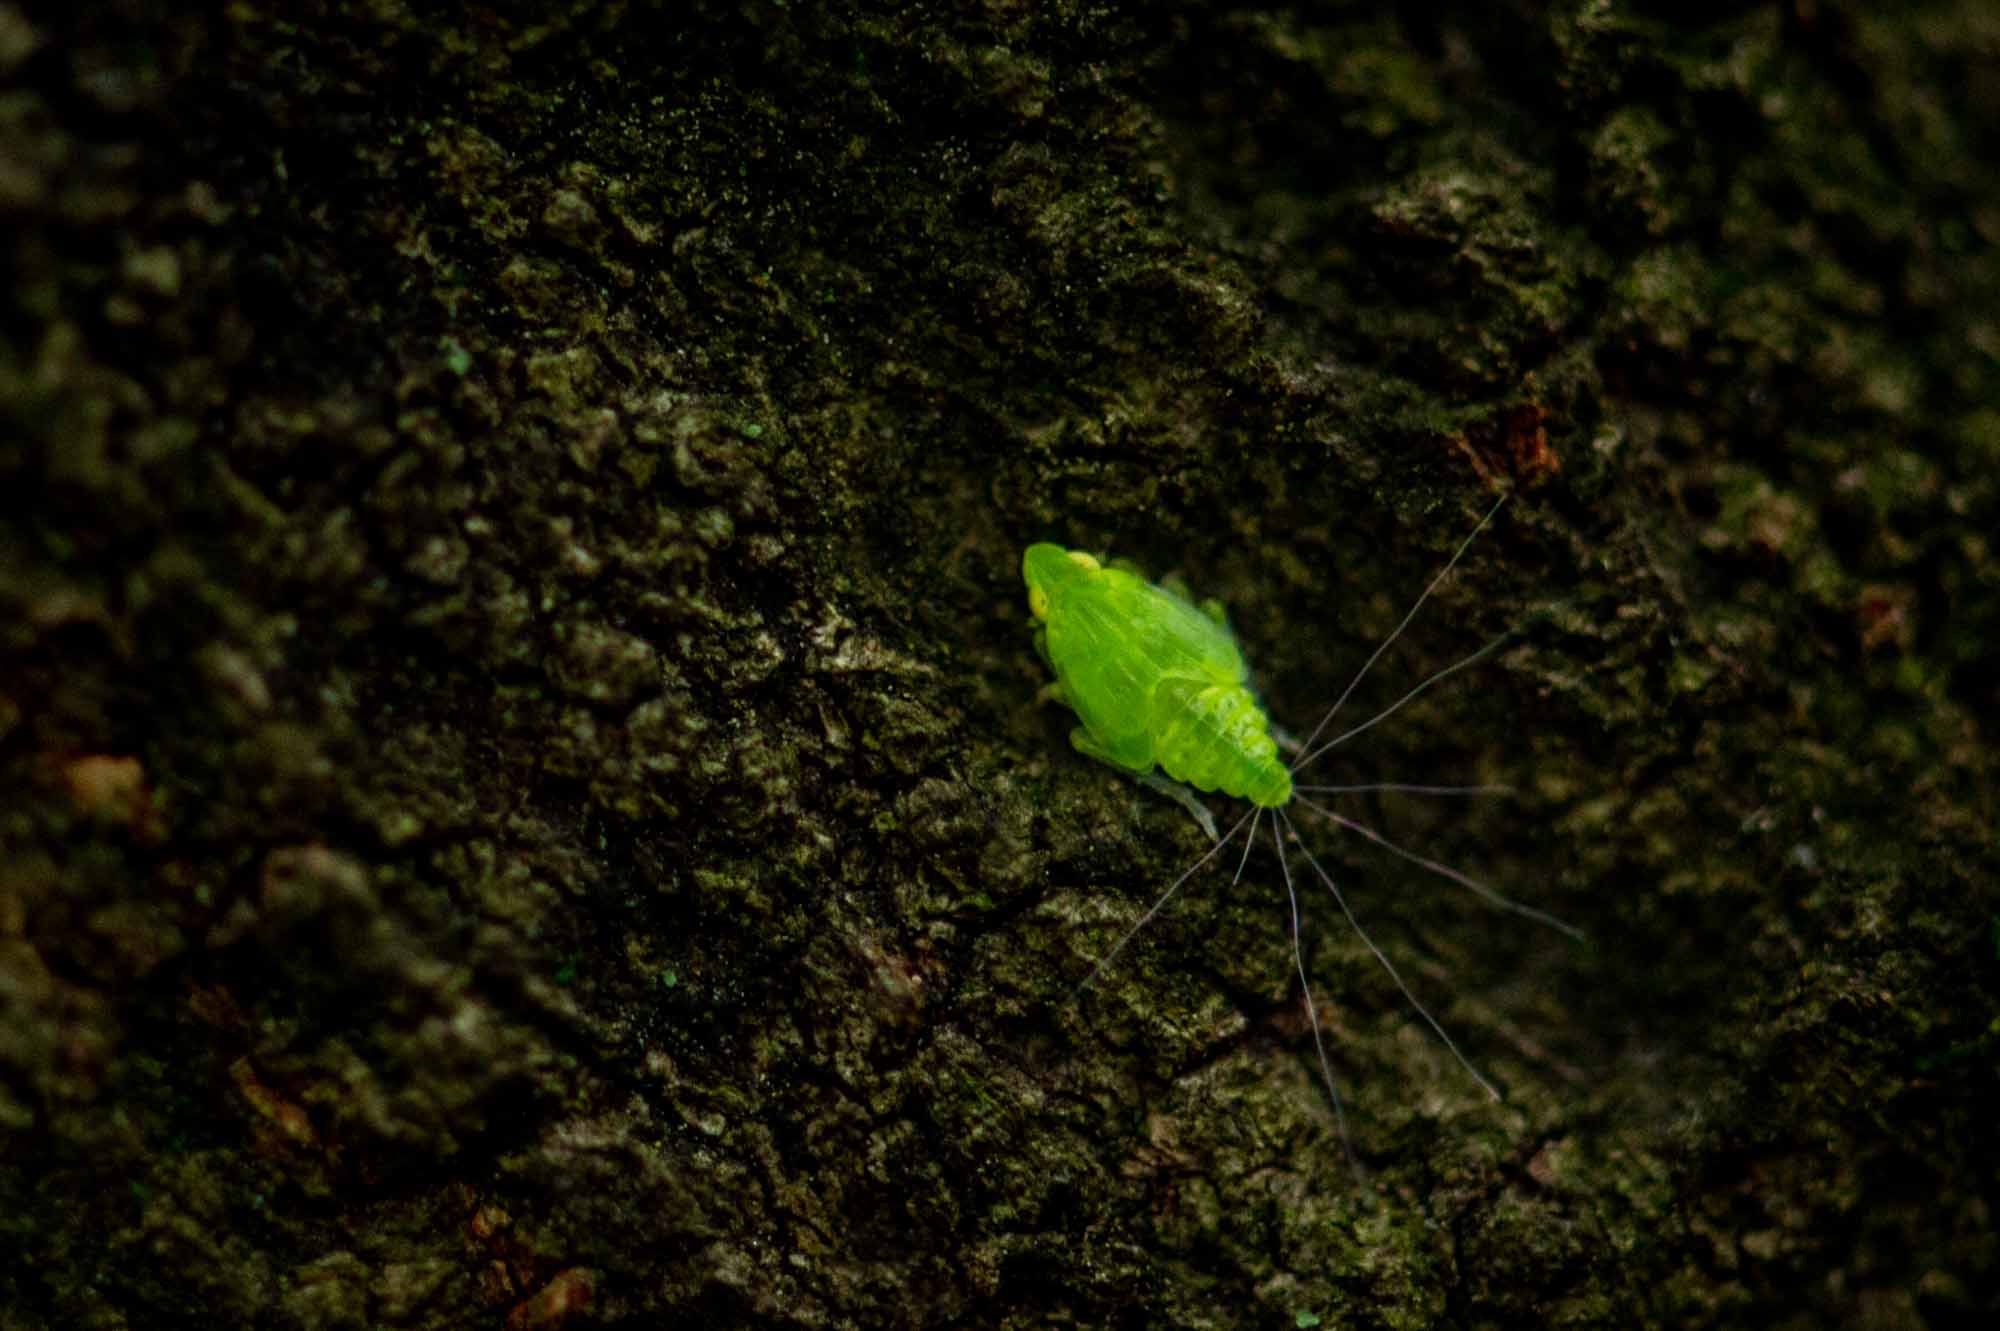 ミドリグンバイウンカ 虫の写真と生態なら昆虫写真図鑑 ムシミル